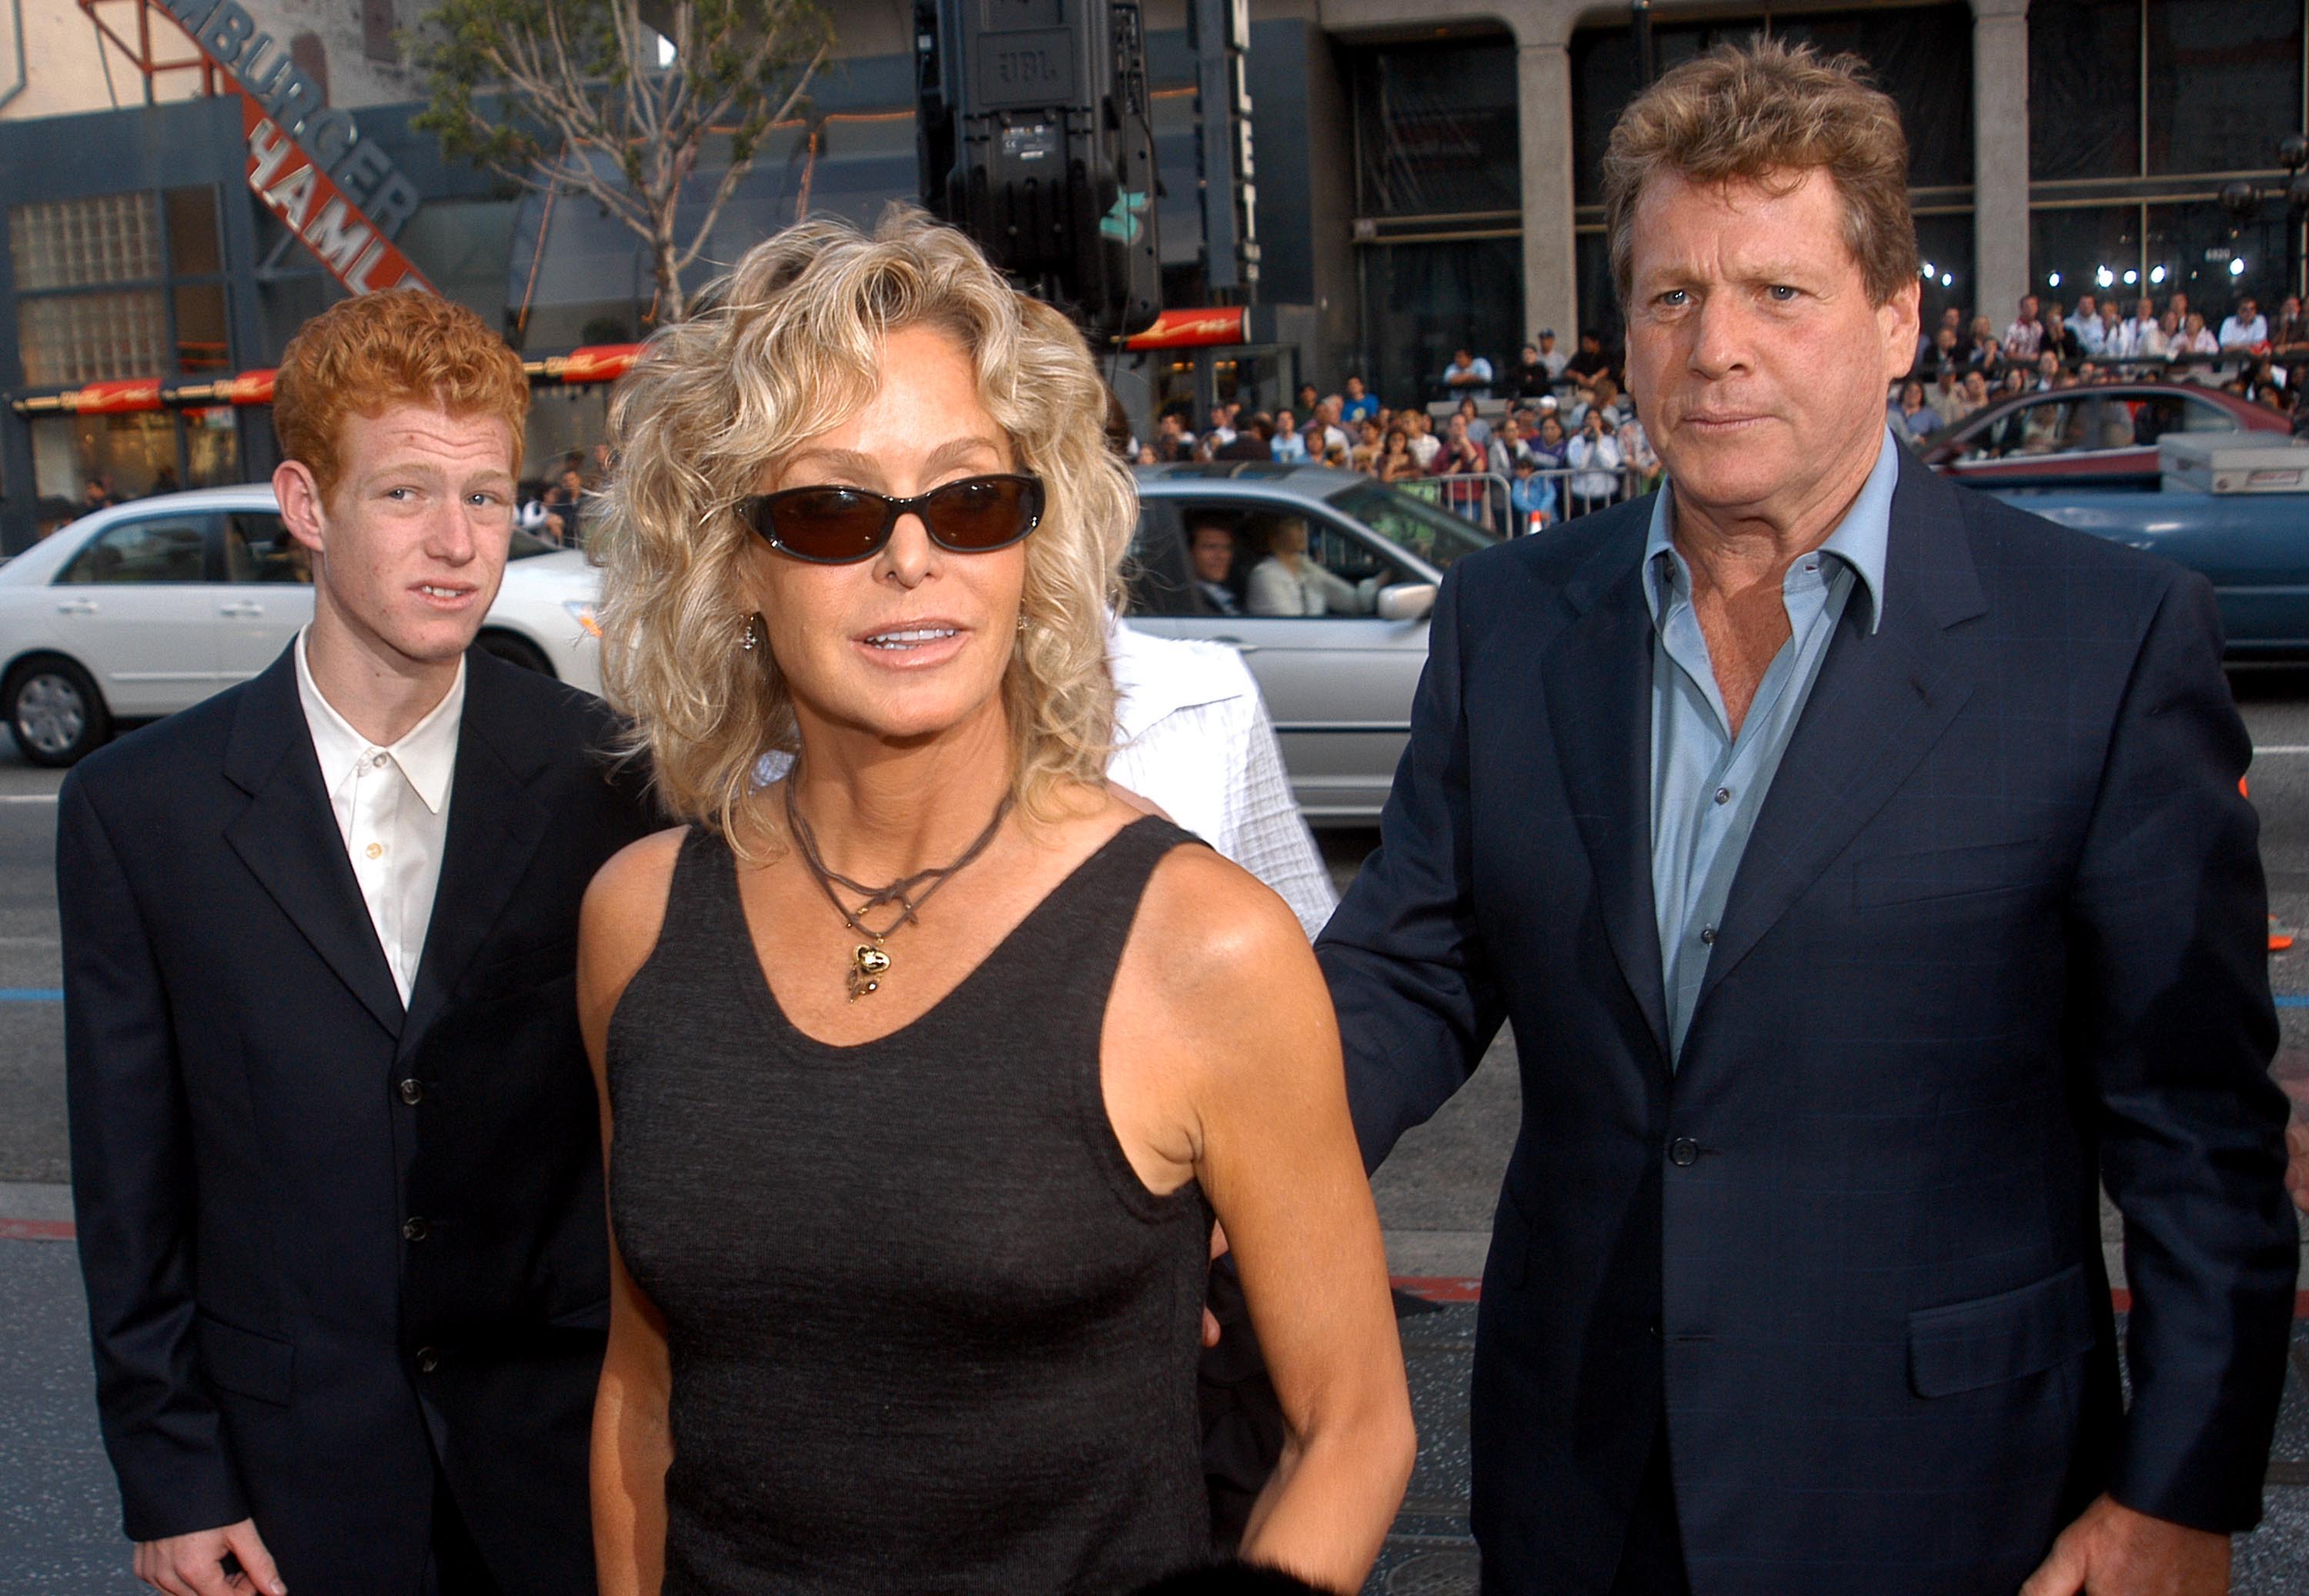 Farrah Fawcett (centro), su hijo Redmond y Ryan O'Neal asisten al estreno de "Malibu's Most Wanted" en Los Ángeles el 10 de abril de 2003 en Los Ángeles, California. | Foto: Getty Images